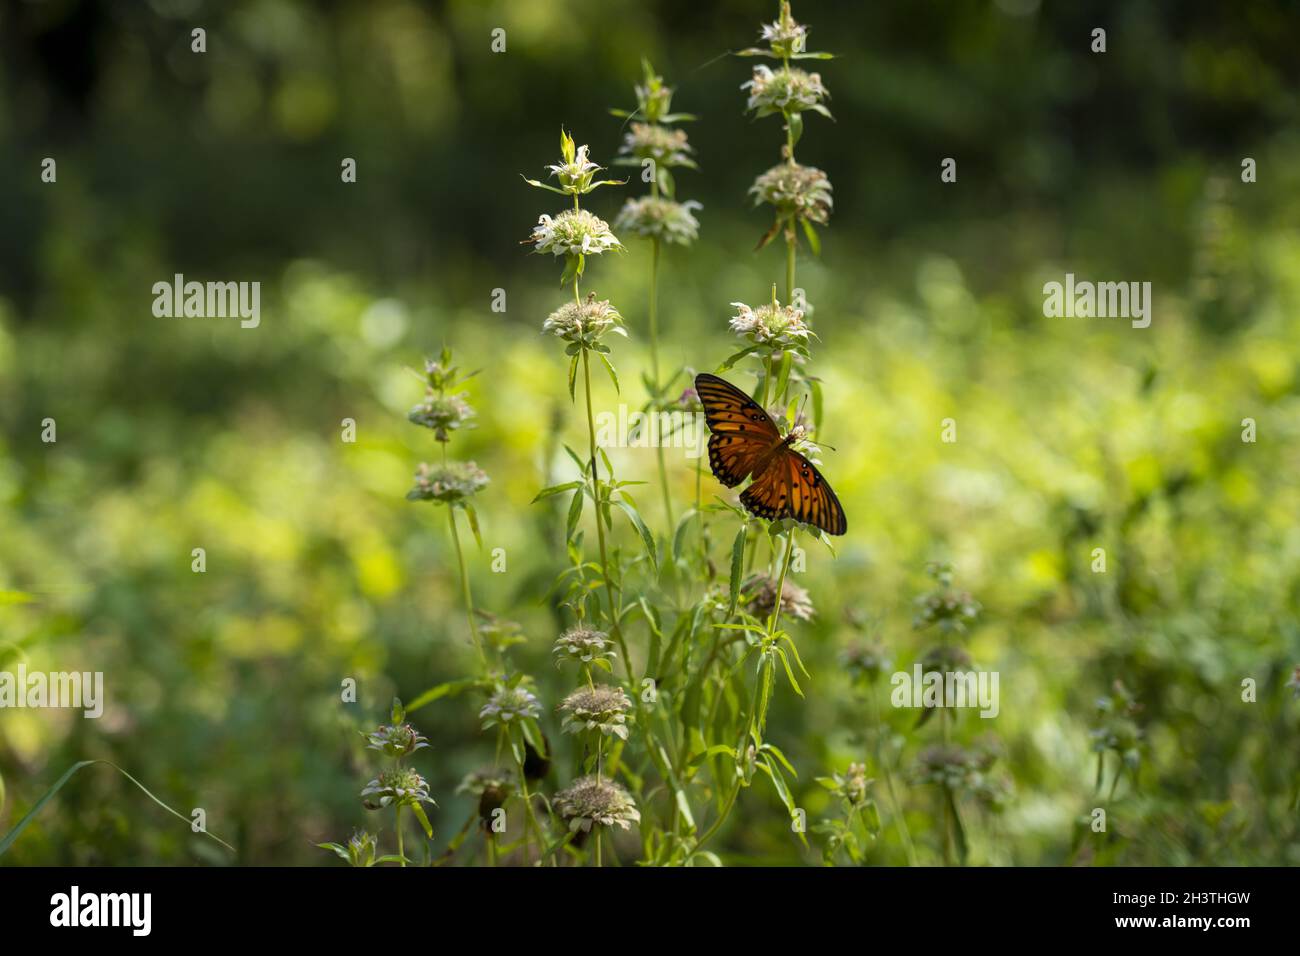 Selettivo di una farfalla monarca () su un fiore in un campo Foto Stock